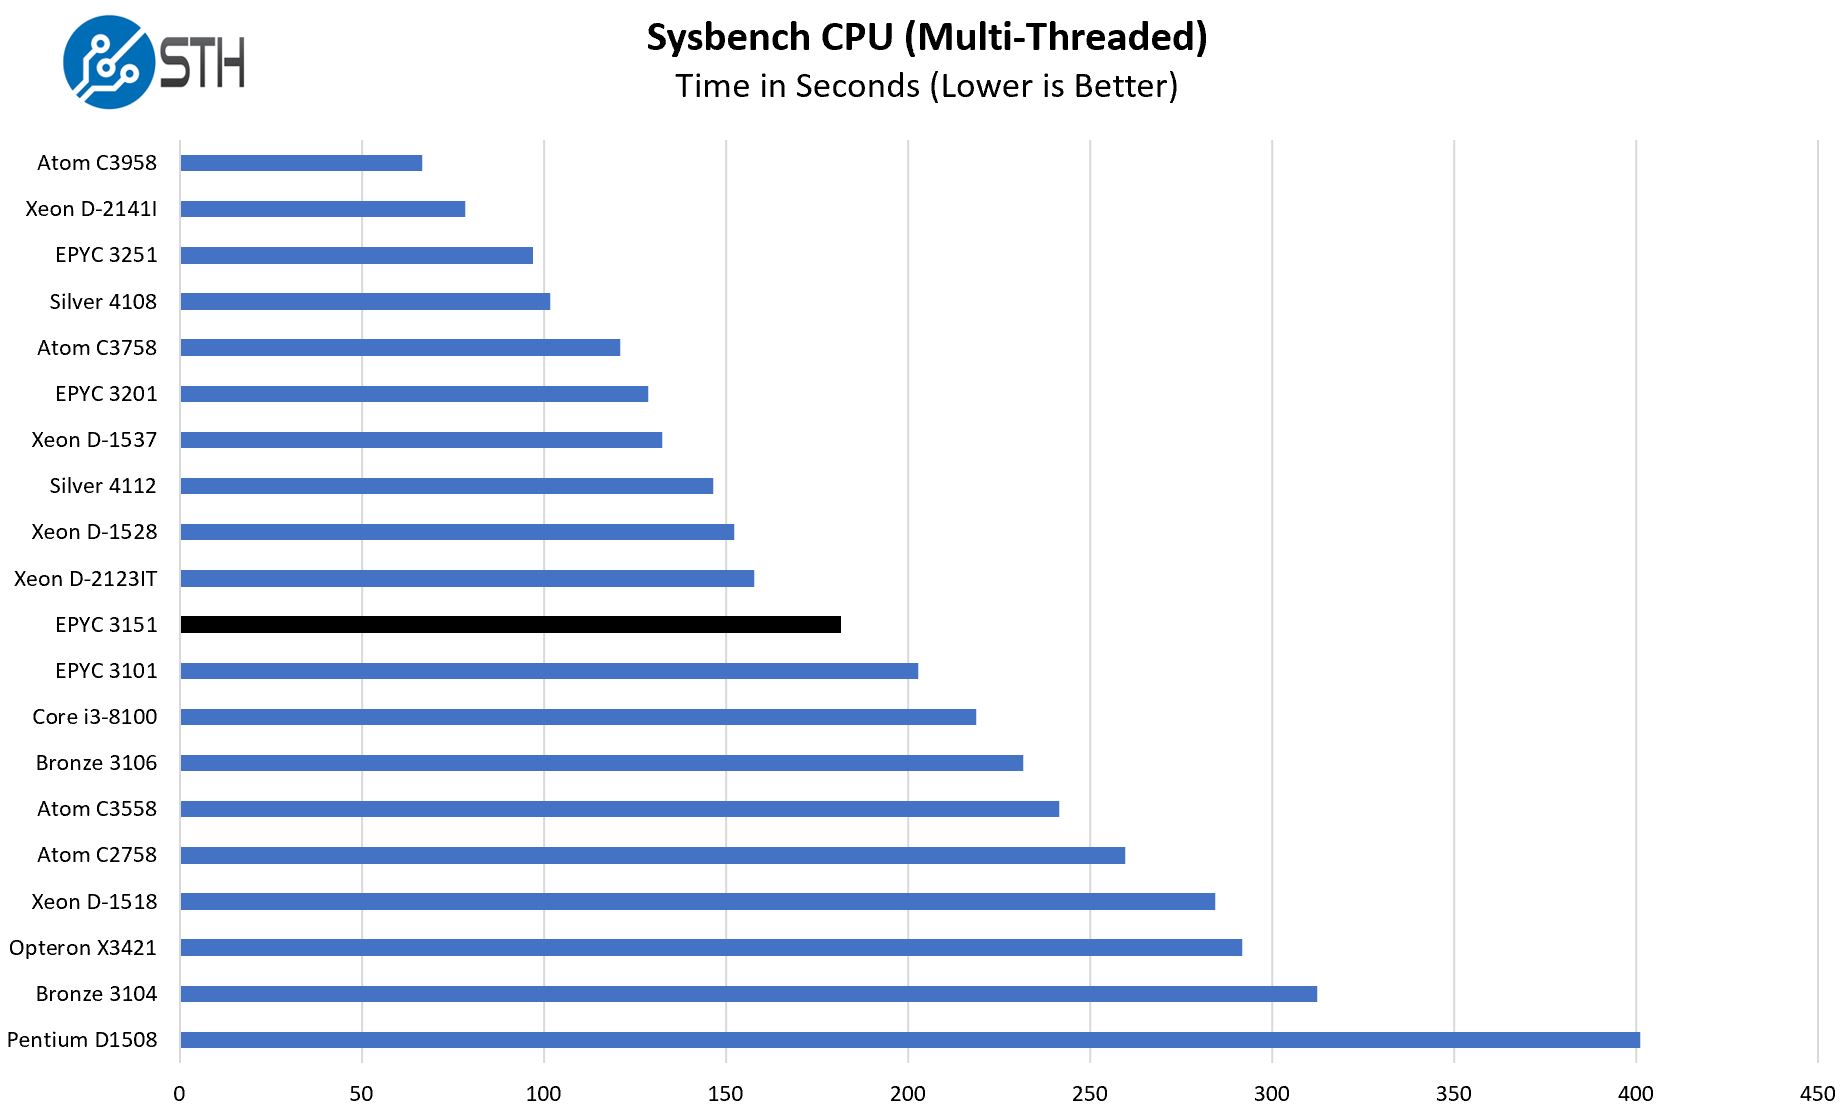 AMD EPYC 3151 Sysbench Multi Threaded Benchmark